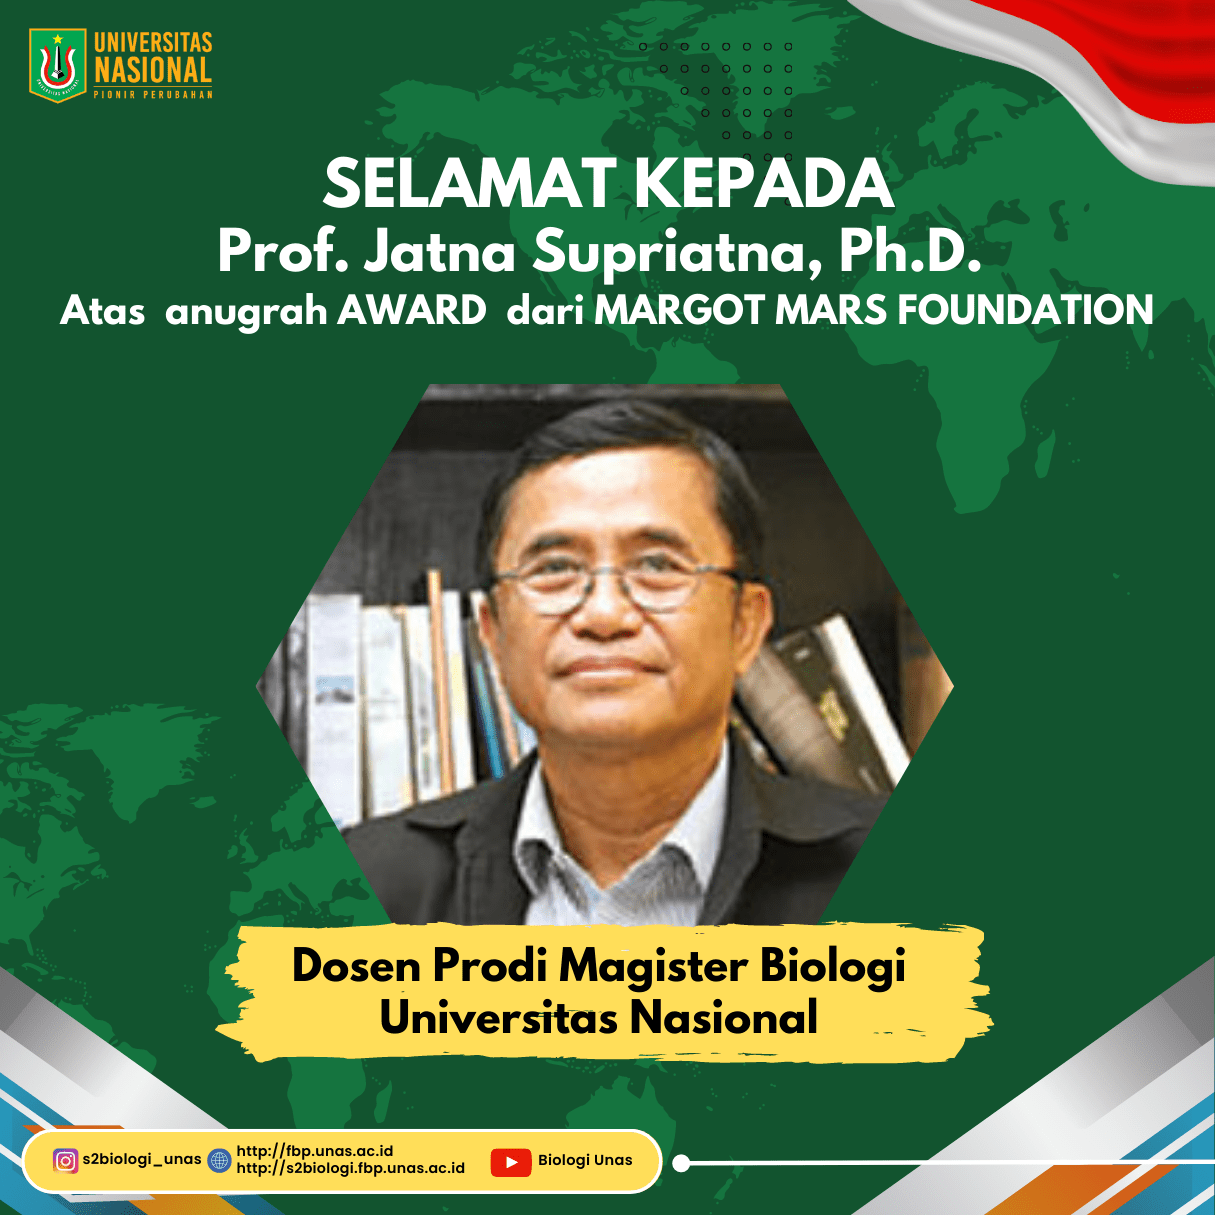 You are currently viewing Selamat Prof. Jatna Supriatna, Ph.D. atas anugerah award dari Margot Marsh Foundation